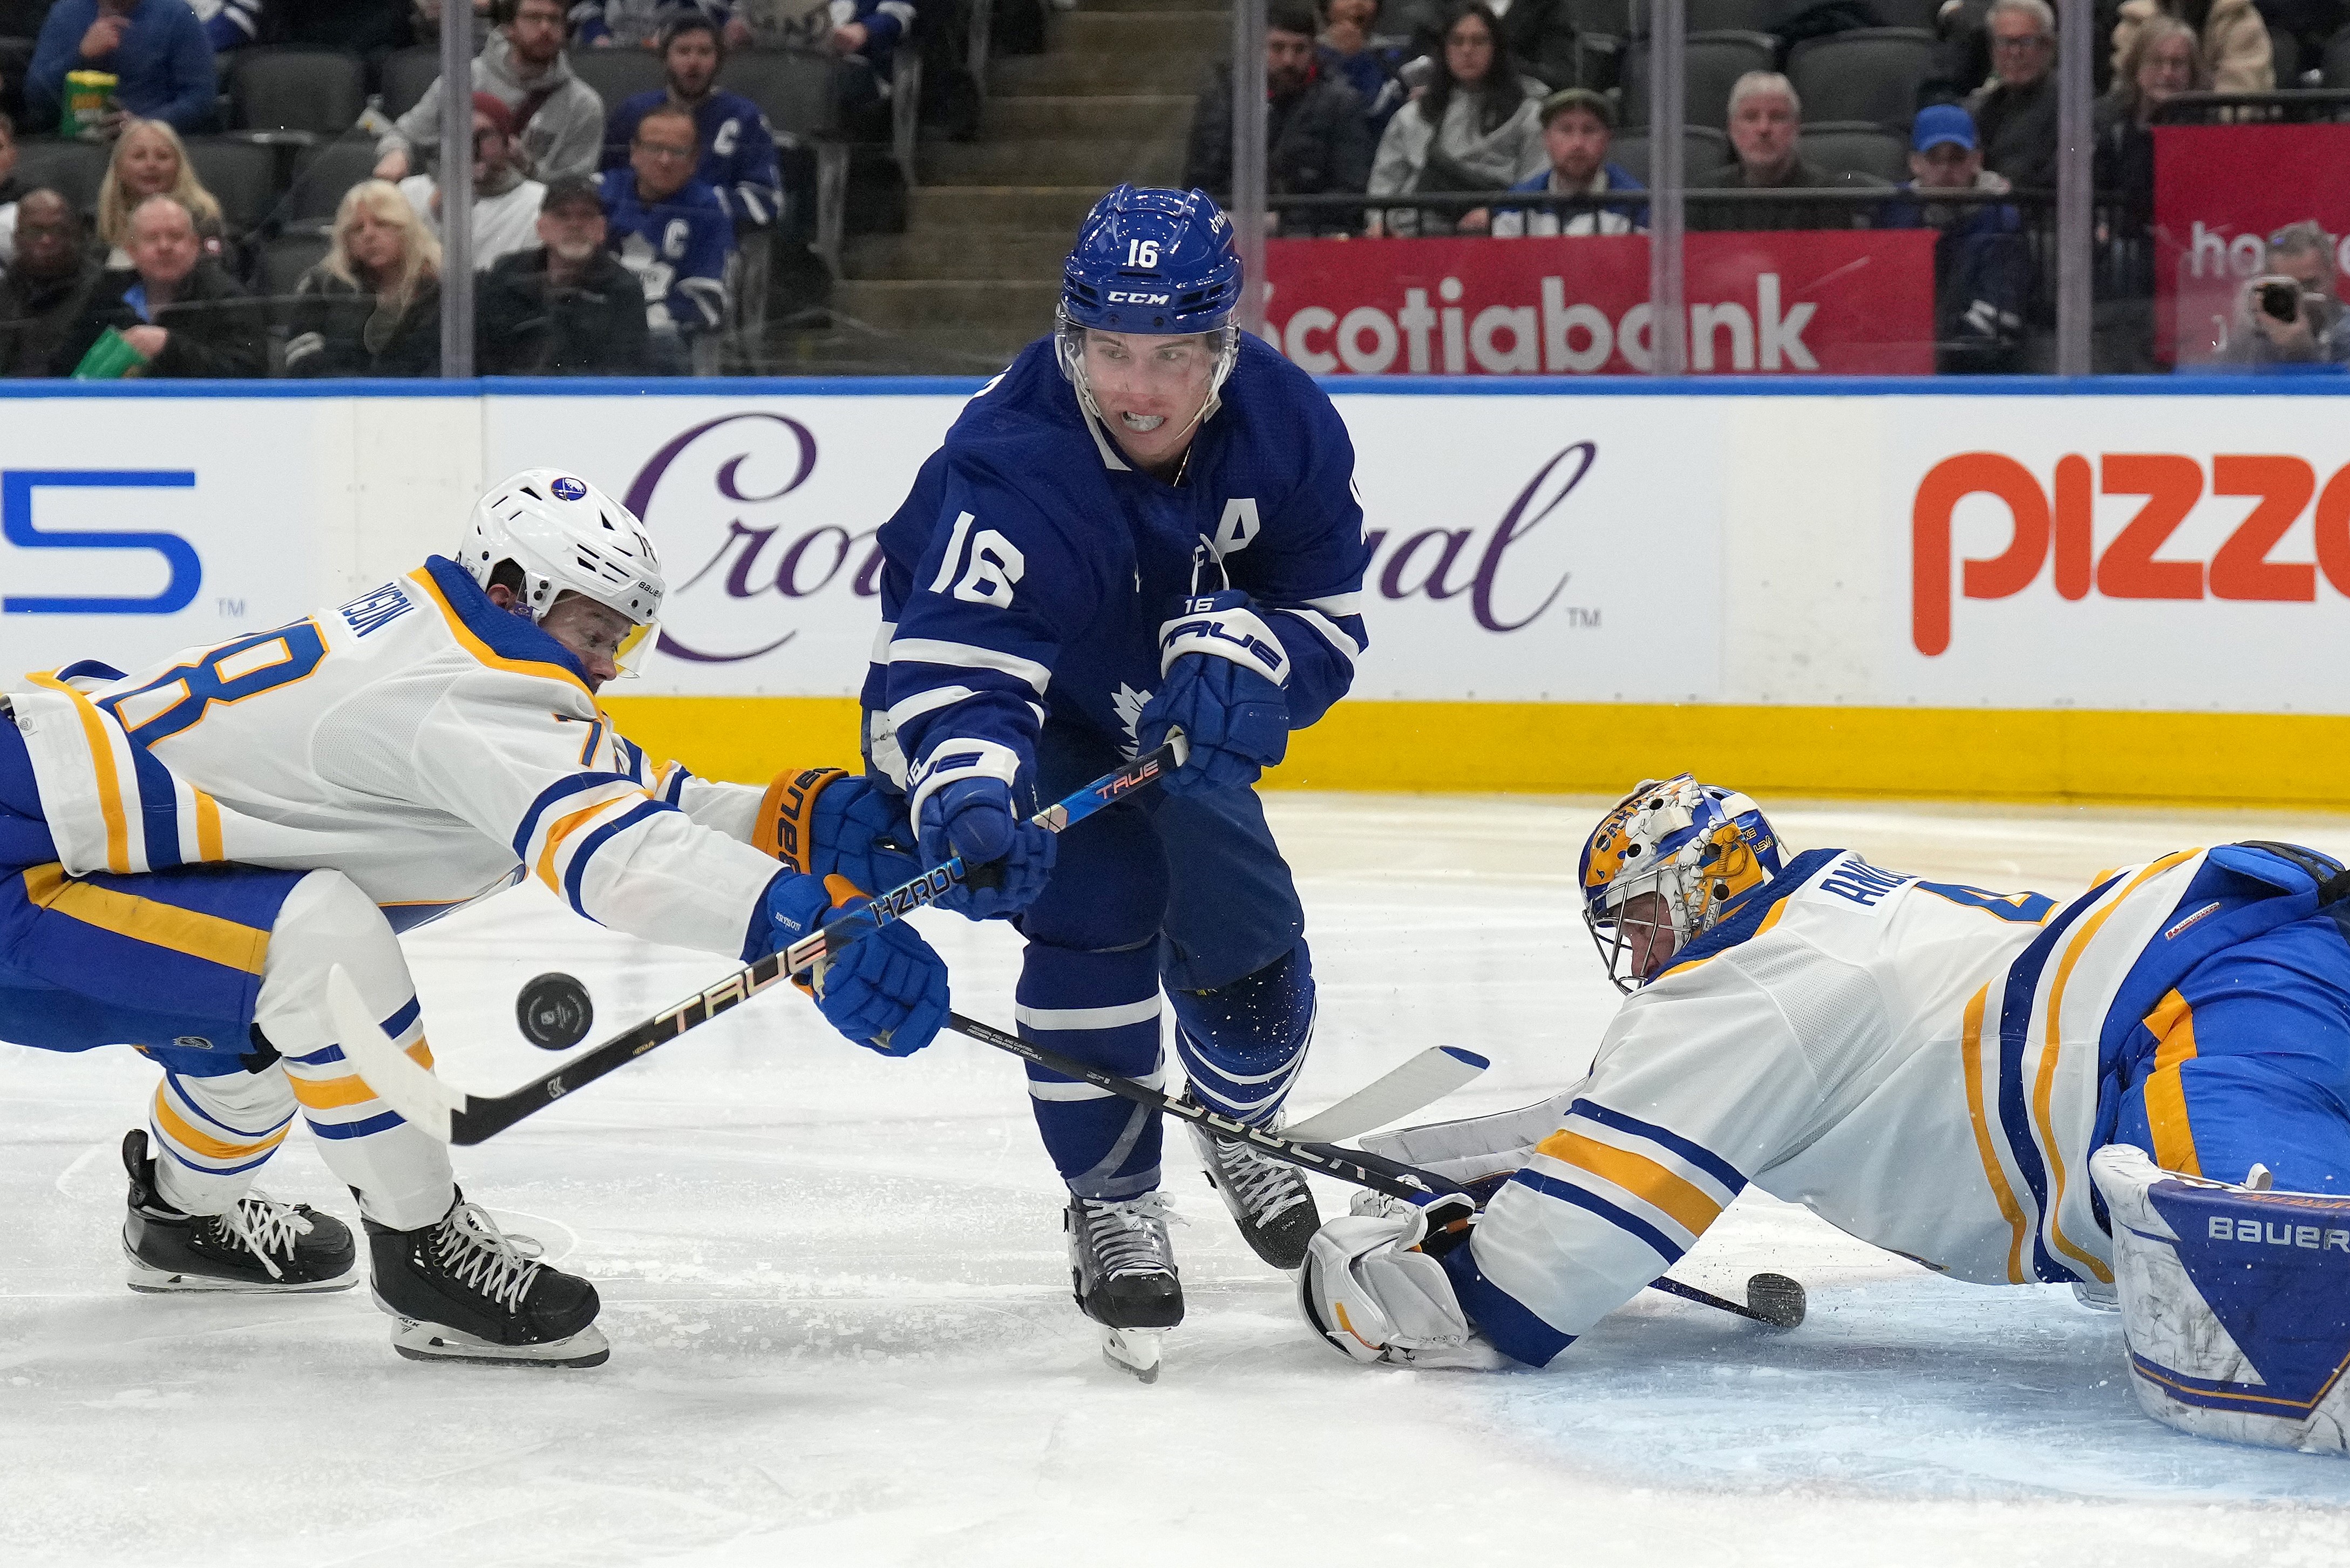 Leafs beat Wild 4-3 behind Murray's saves, Jarnkrok's goal